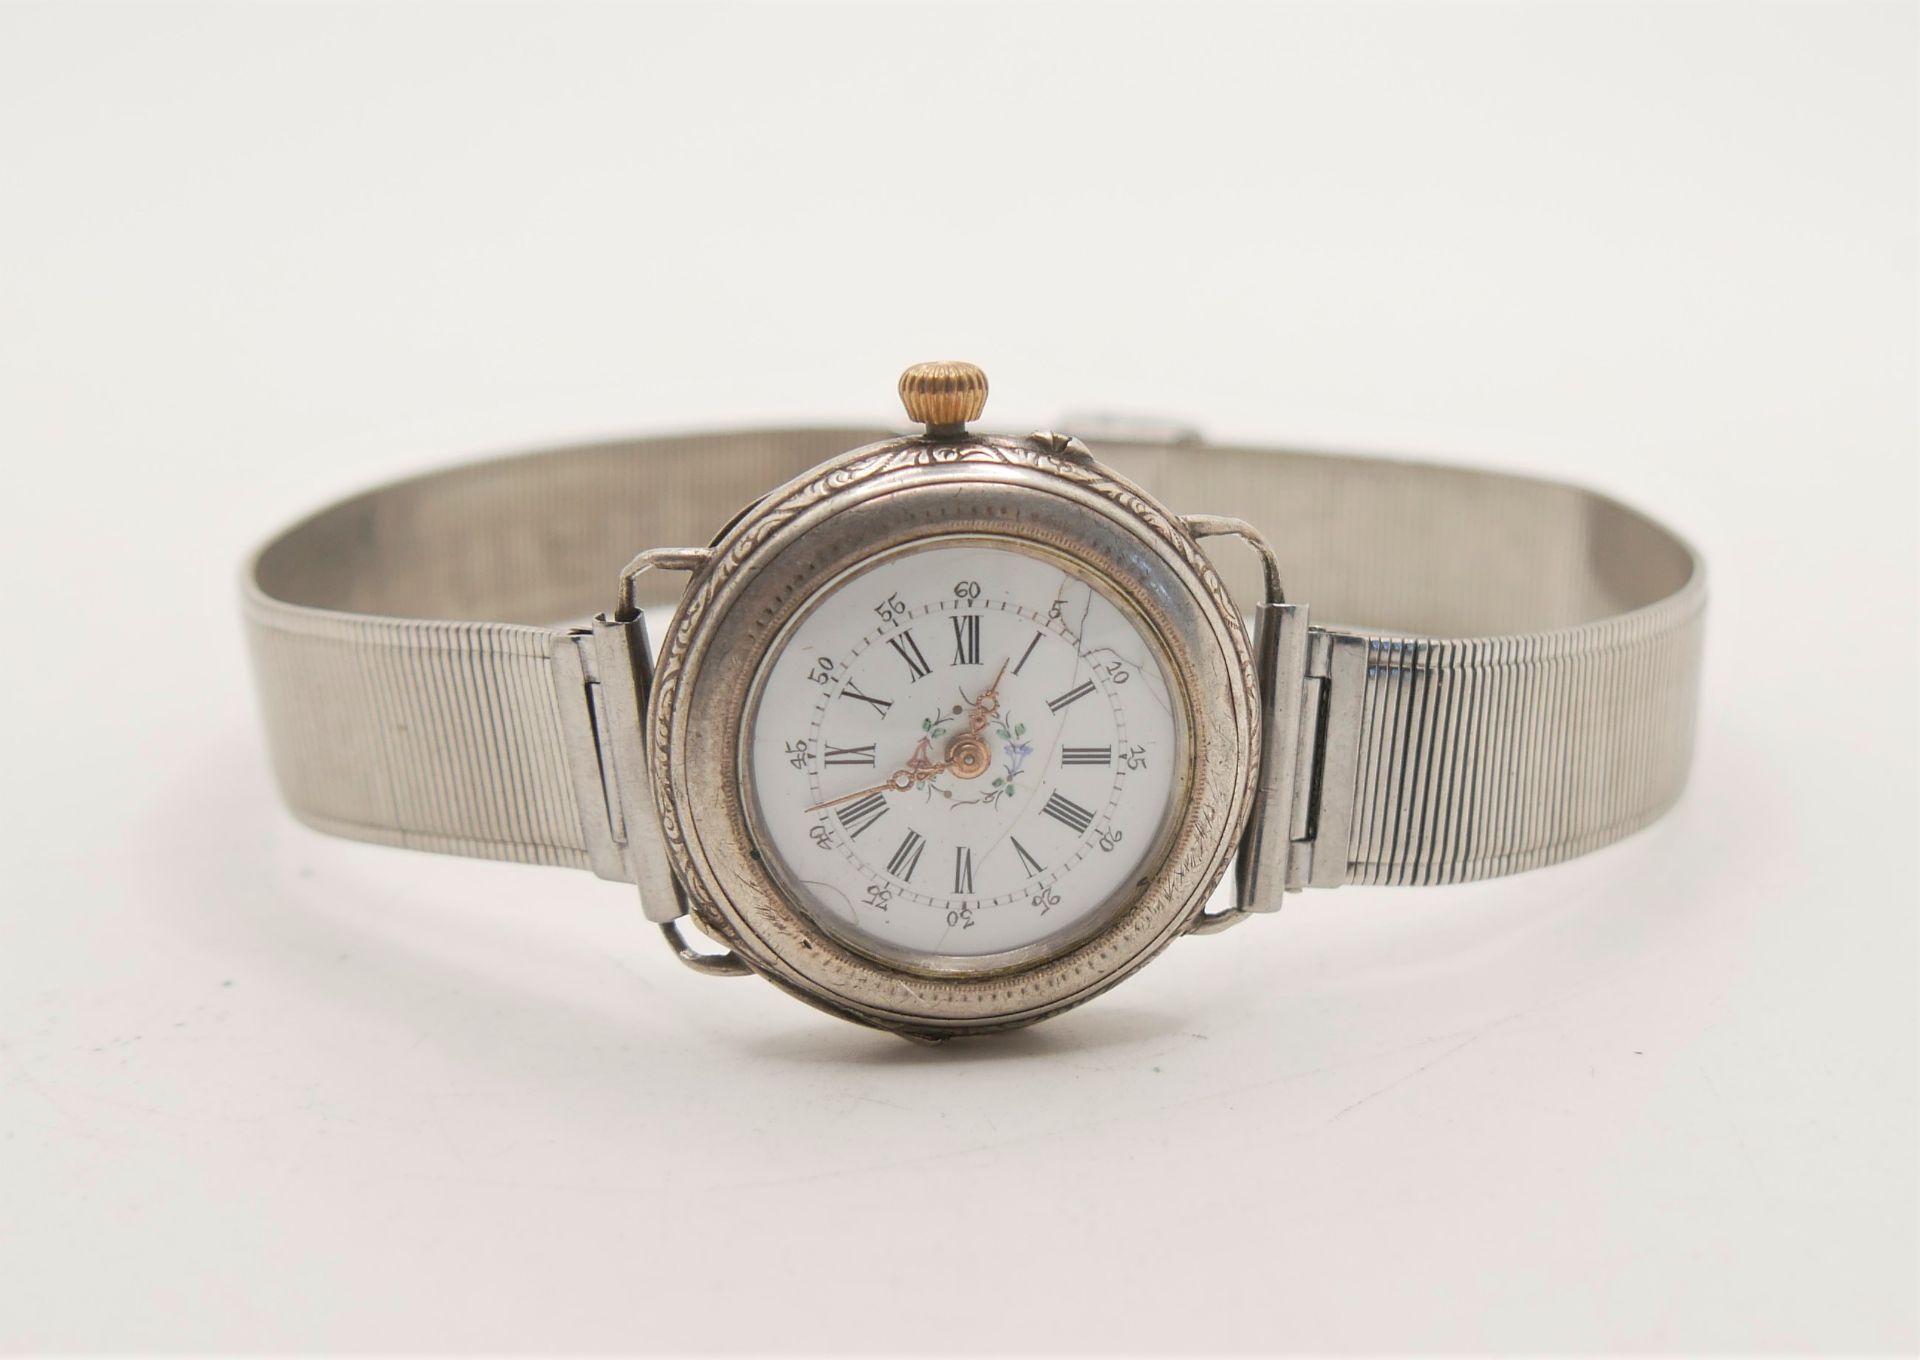 Silberne Taschenuhr zur Armbanduhr umgebaut. Funktion geprüft.